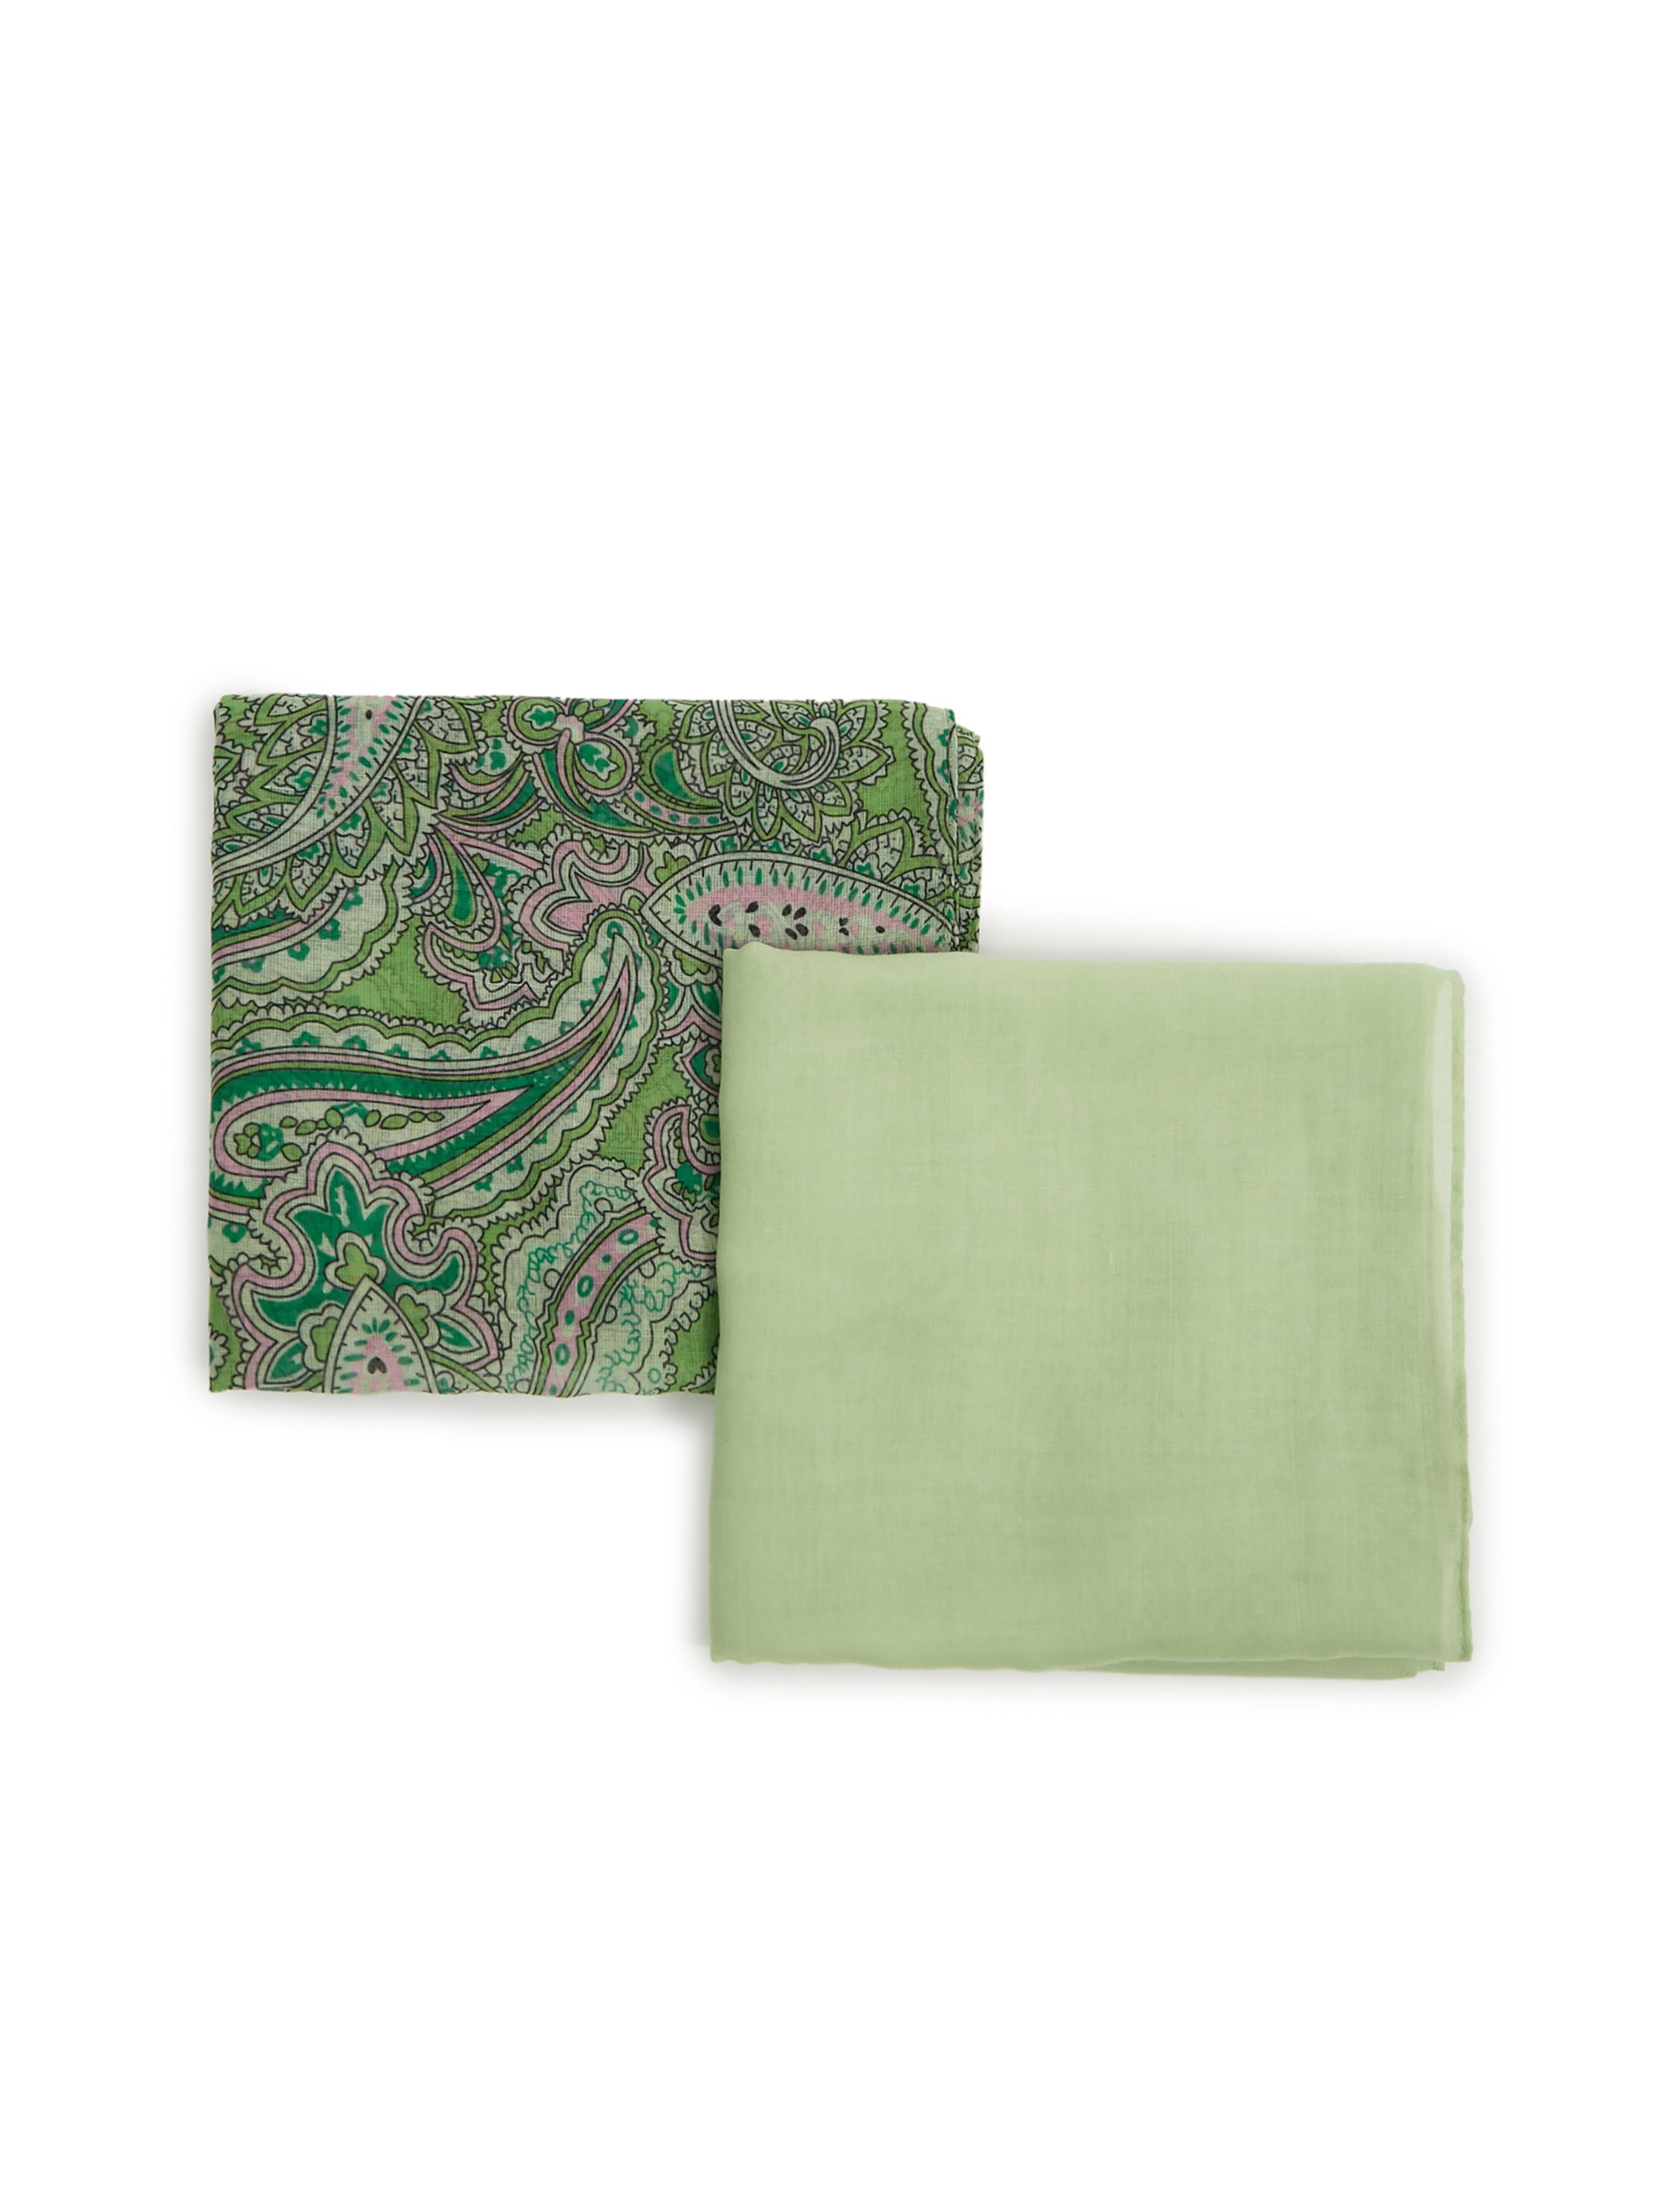 ORSAY két darab zöld színű női sálból álló készlet